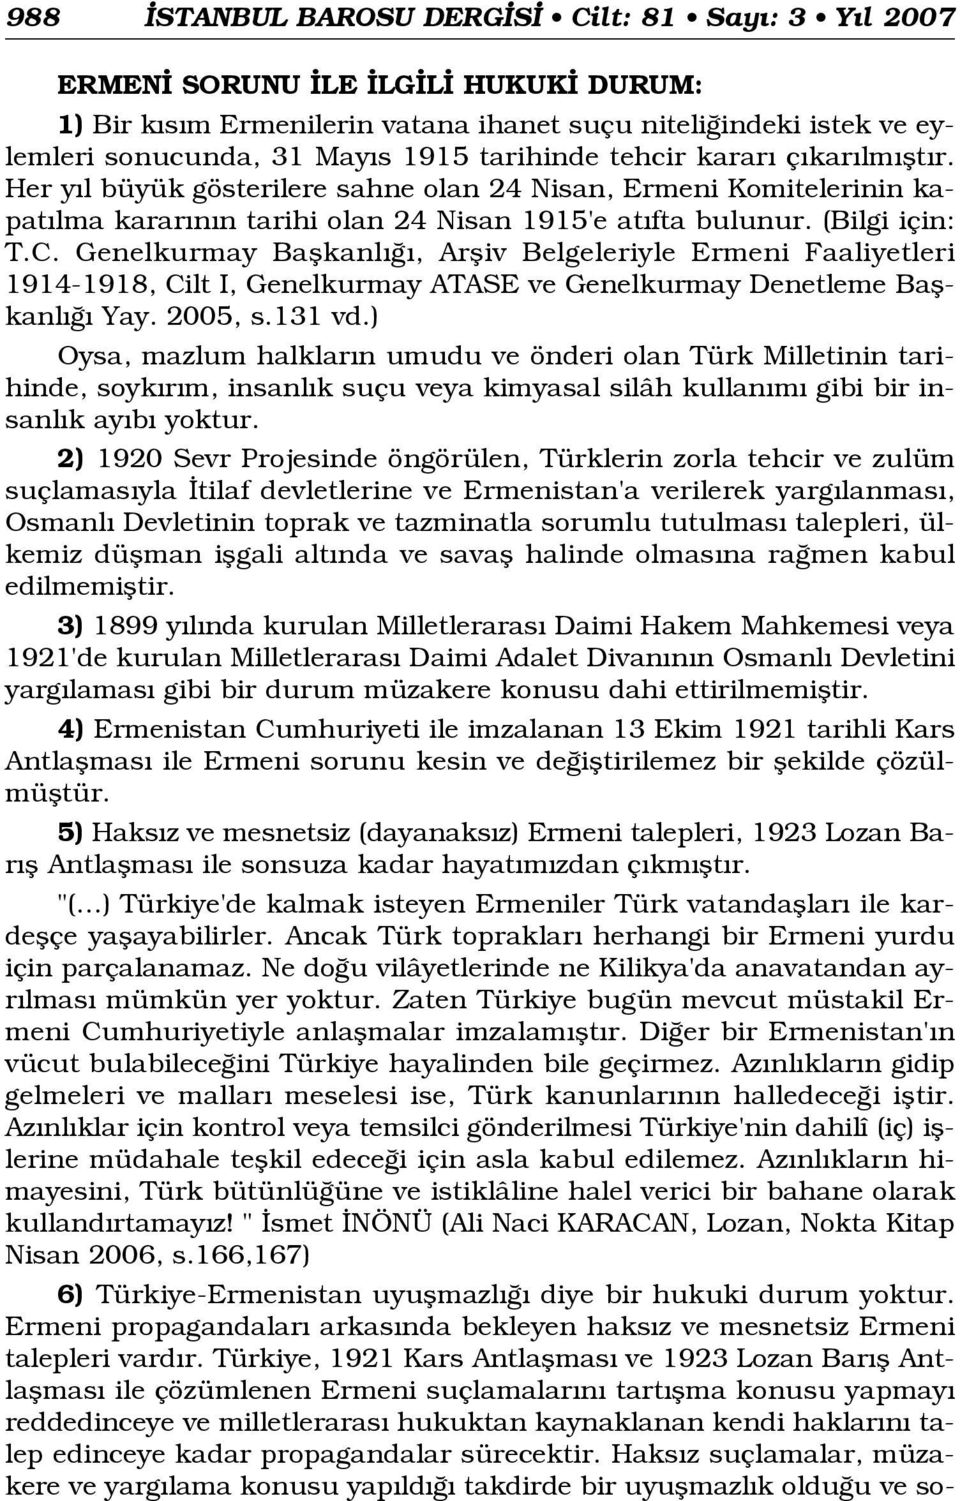 Genelkurmay Baflkanl, Arfliv Belgeleriyle Ermeni Faaliyetleri 1914-1918, Cilt I, Genelkurmay ATASE ve Genelkurmay Denetleme Baflkanl Yay. 2005, s.131 vd.